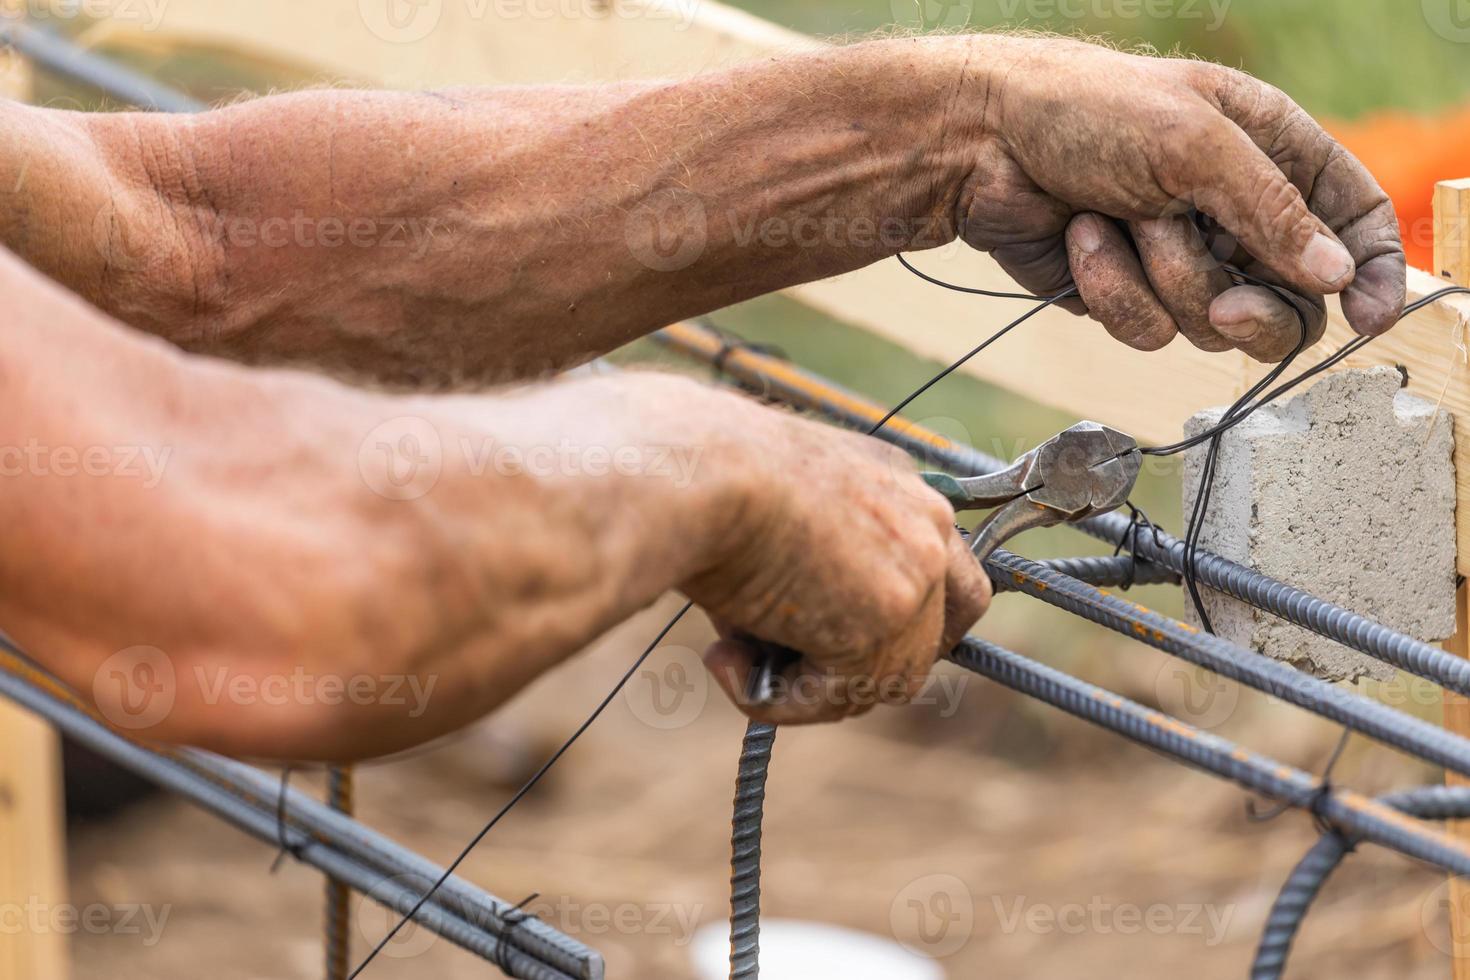 arbeider beveiligen staal wapening framing met draad tang snijder gereedschap Bij bouw plaats foto